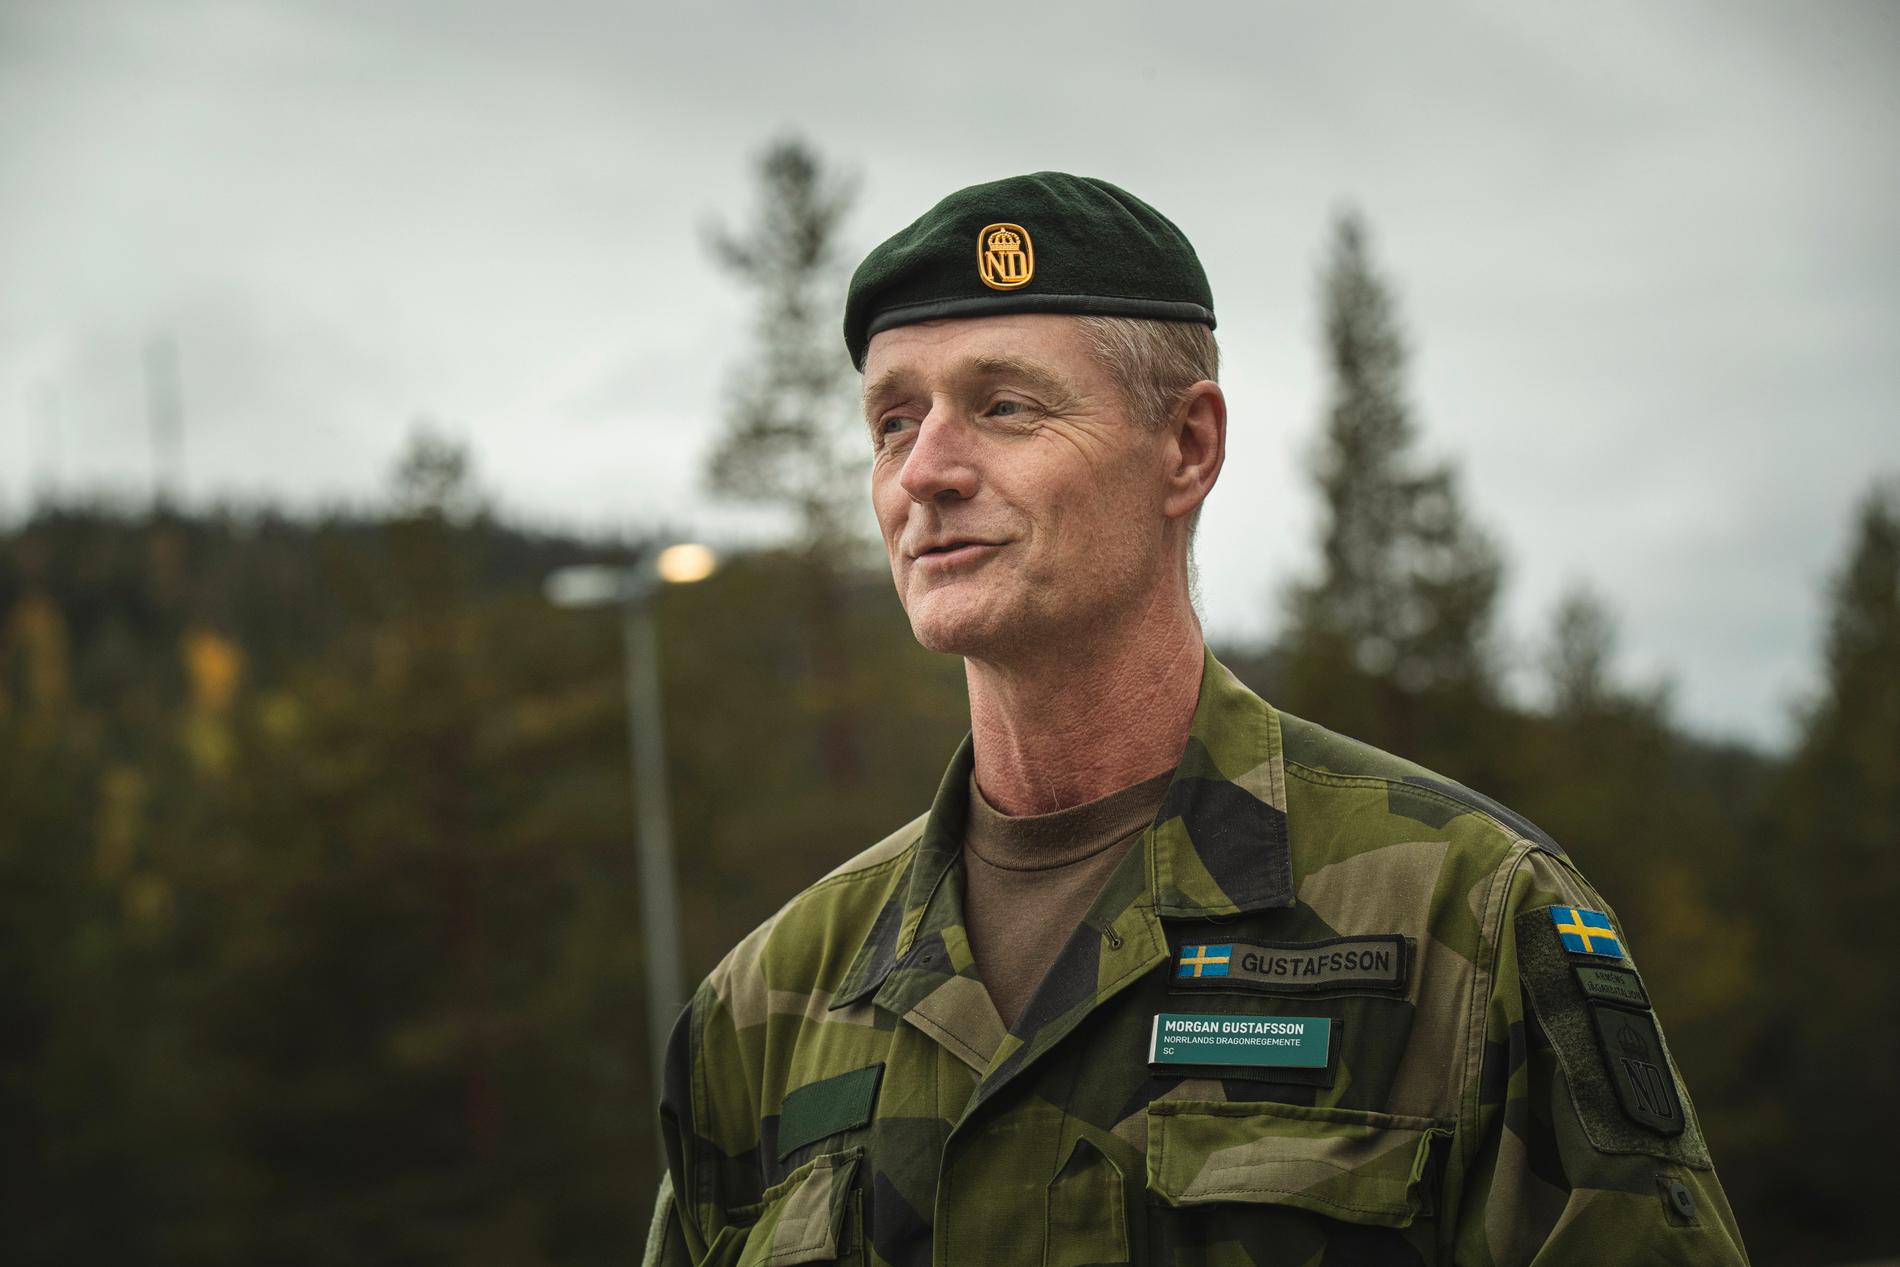 Morgan Gustavsson, stabschef K 4 på Norrlands Dragonregementet.